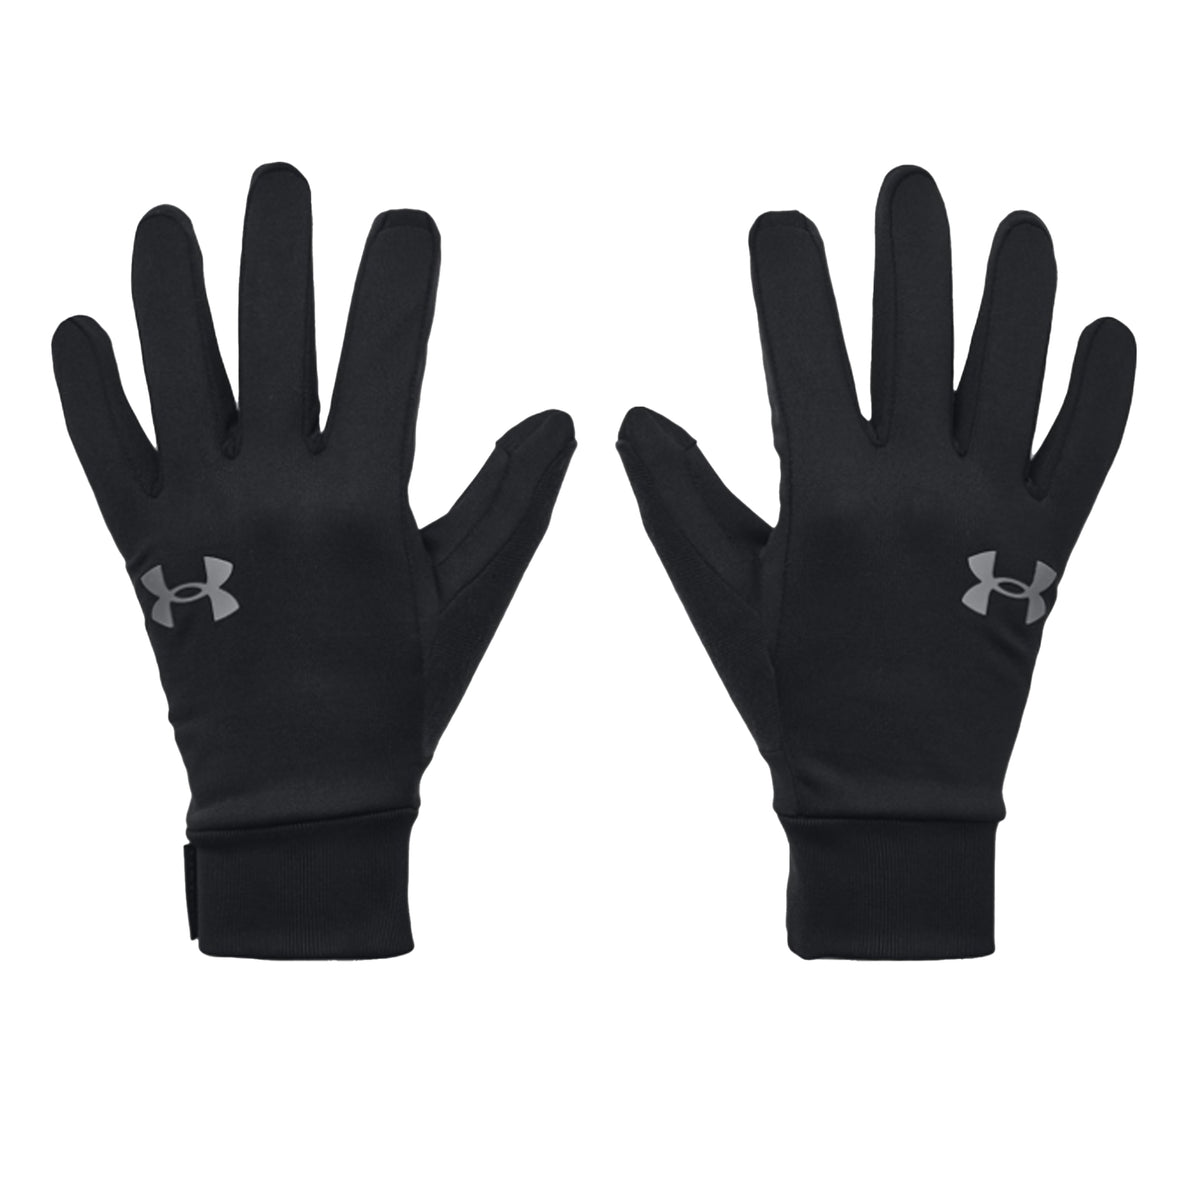 Under Armour Liner Storm Gloves: Black